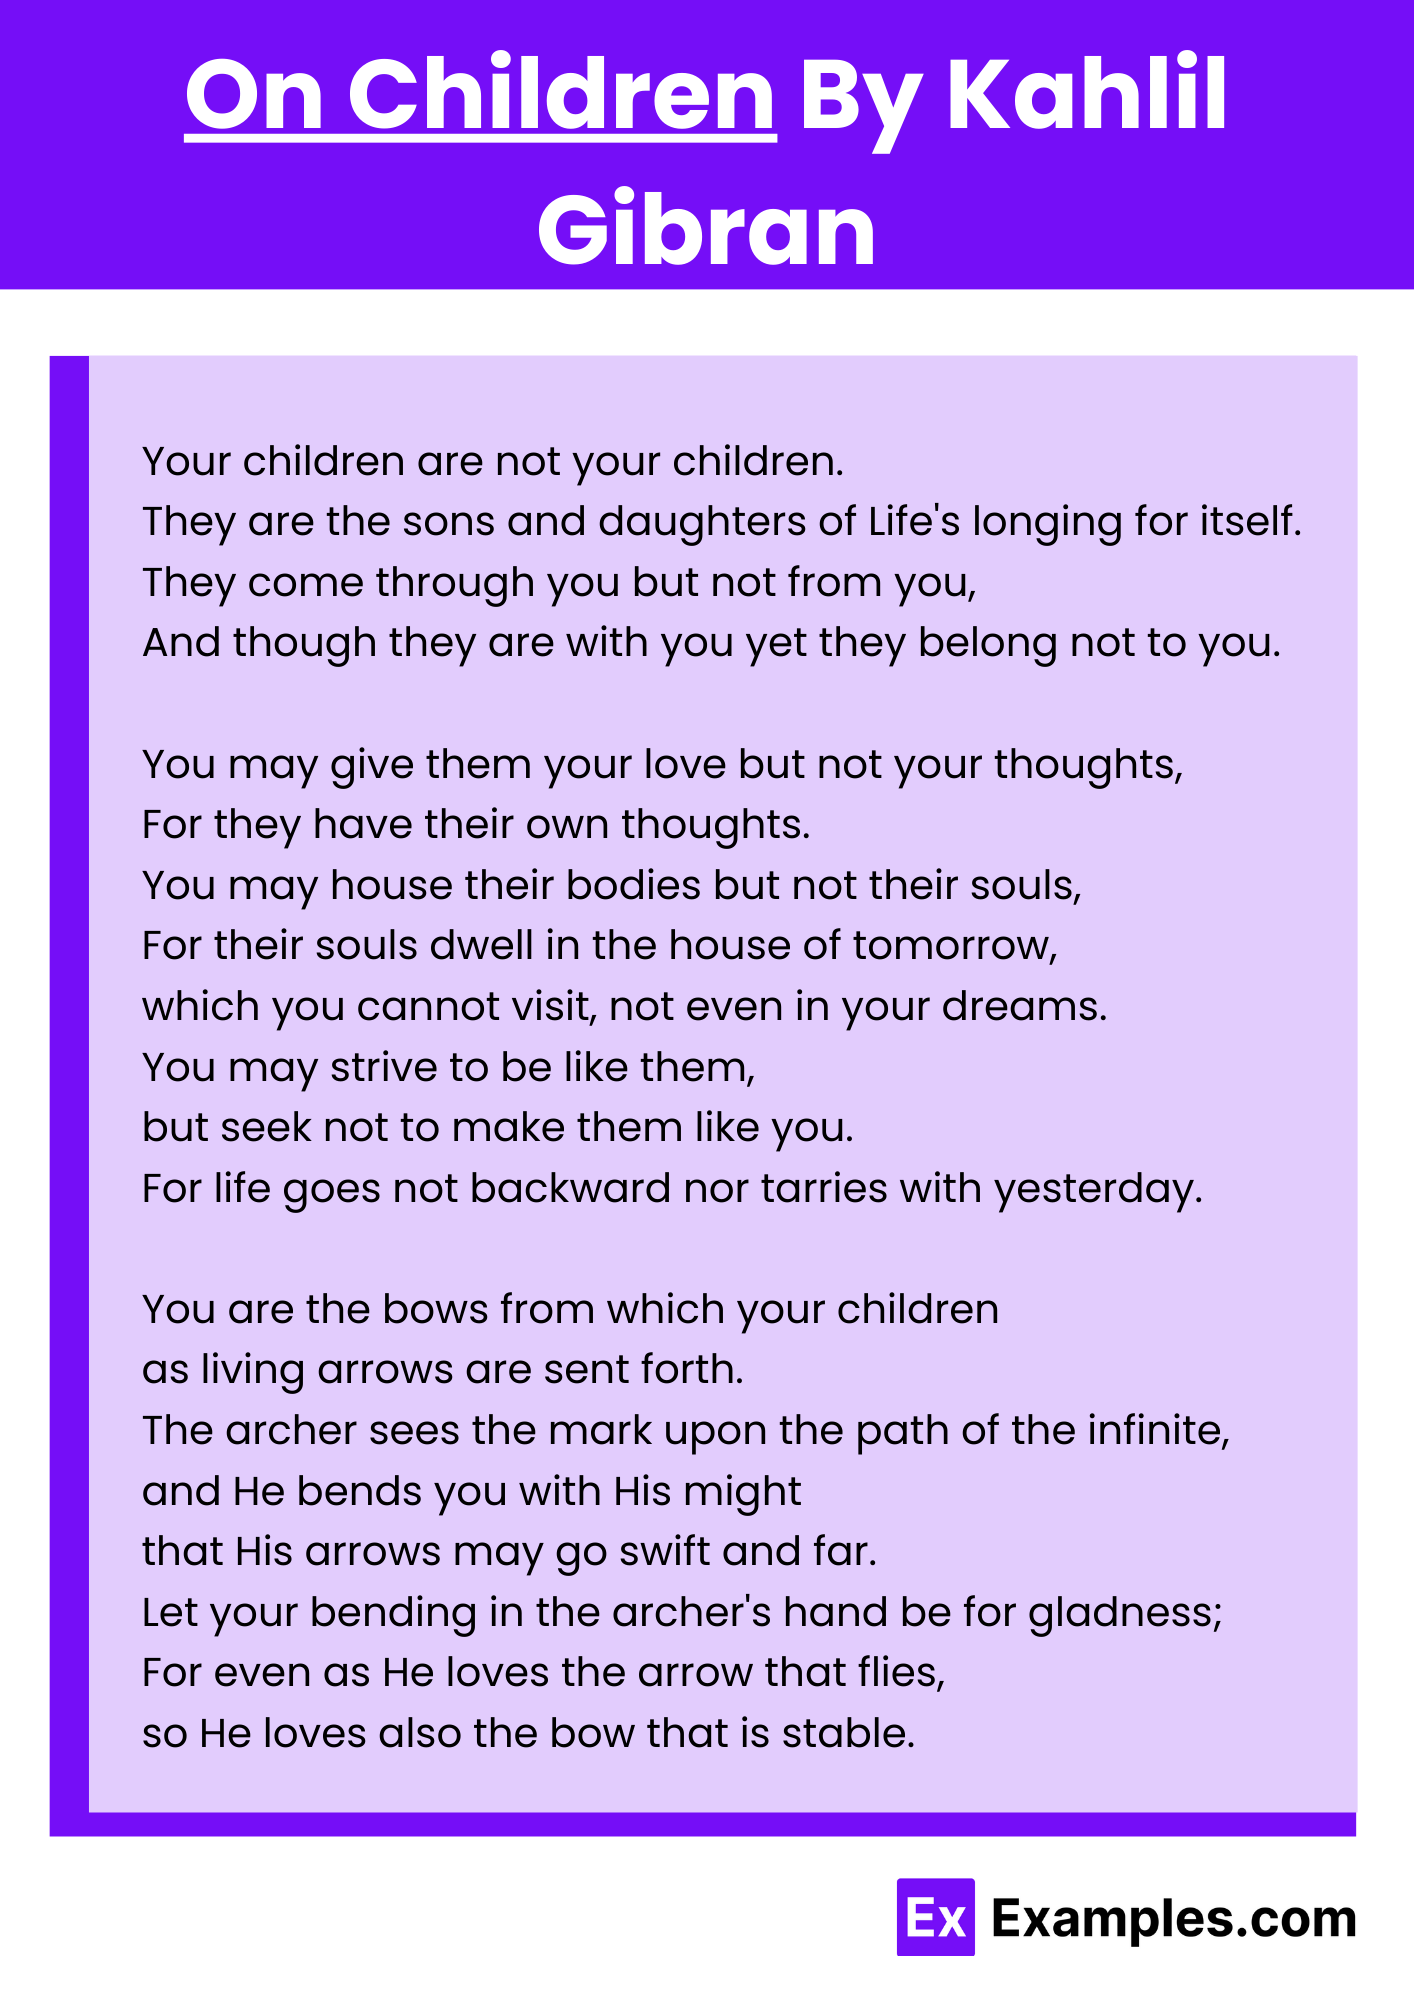 On Children By Kahlil Gibran